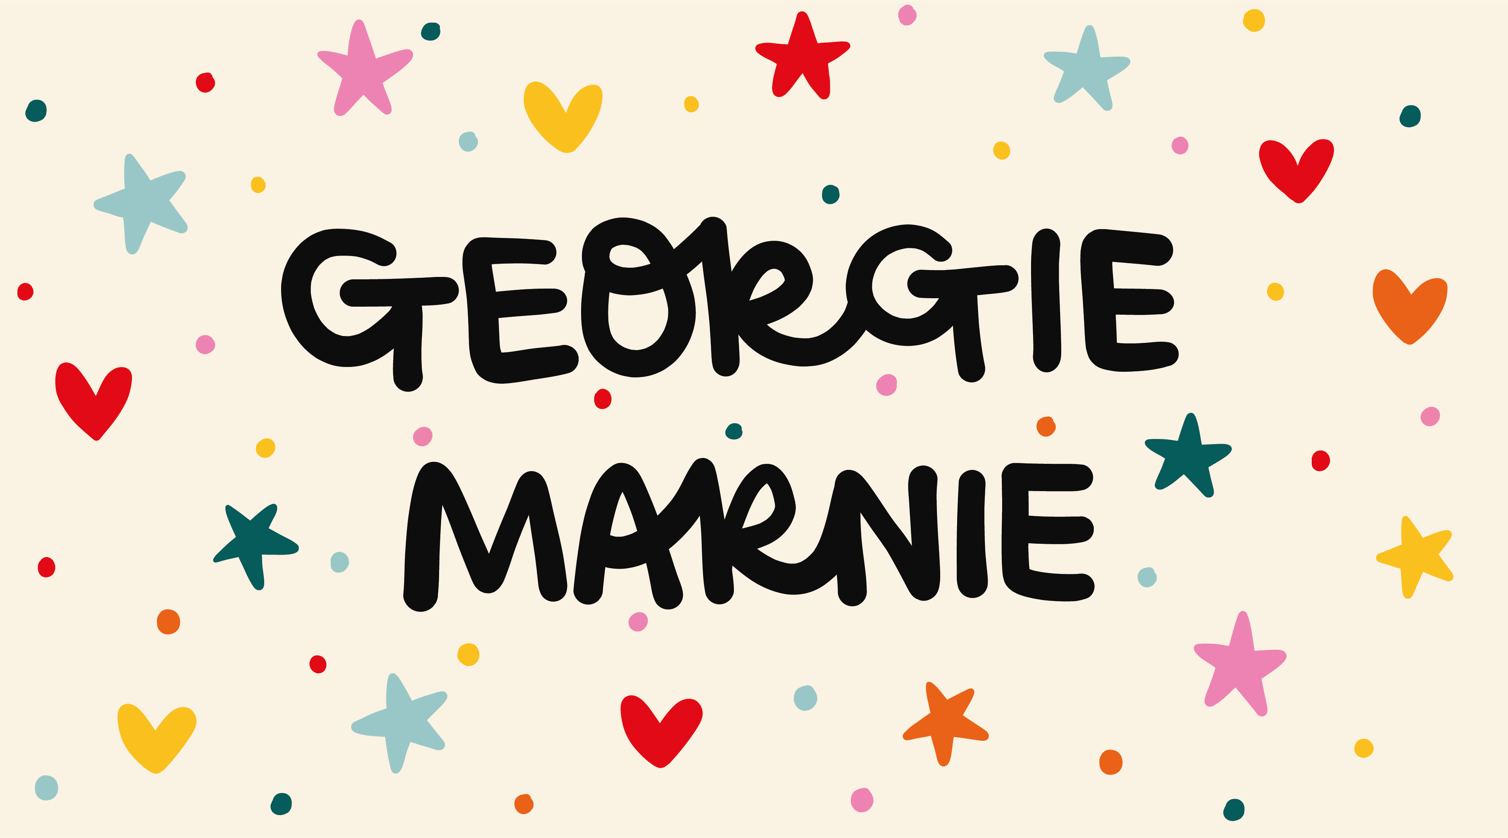 Georgie Marnie Home